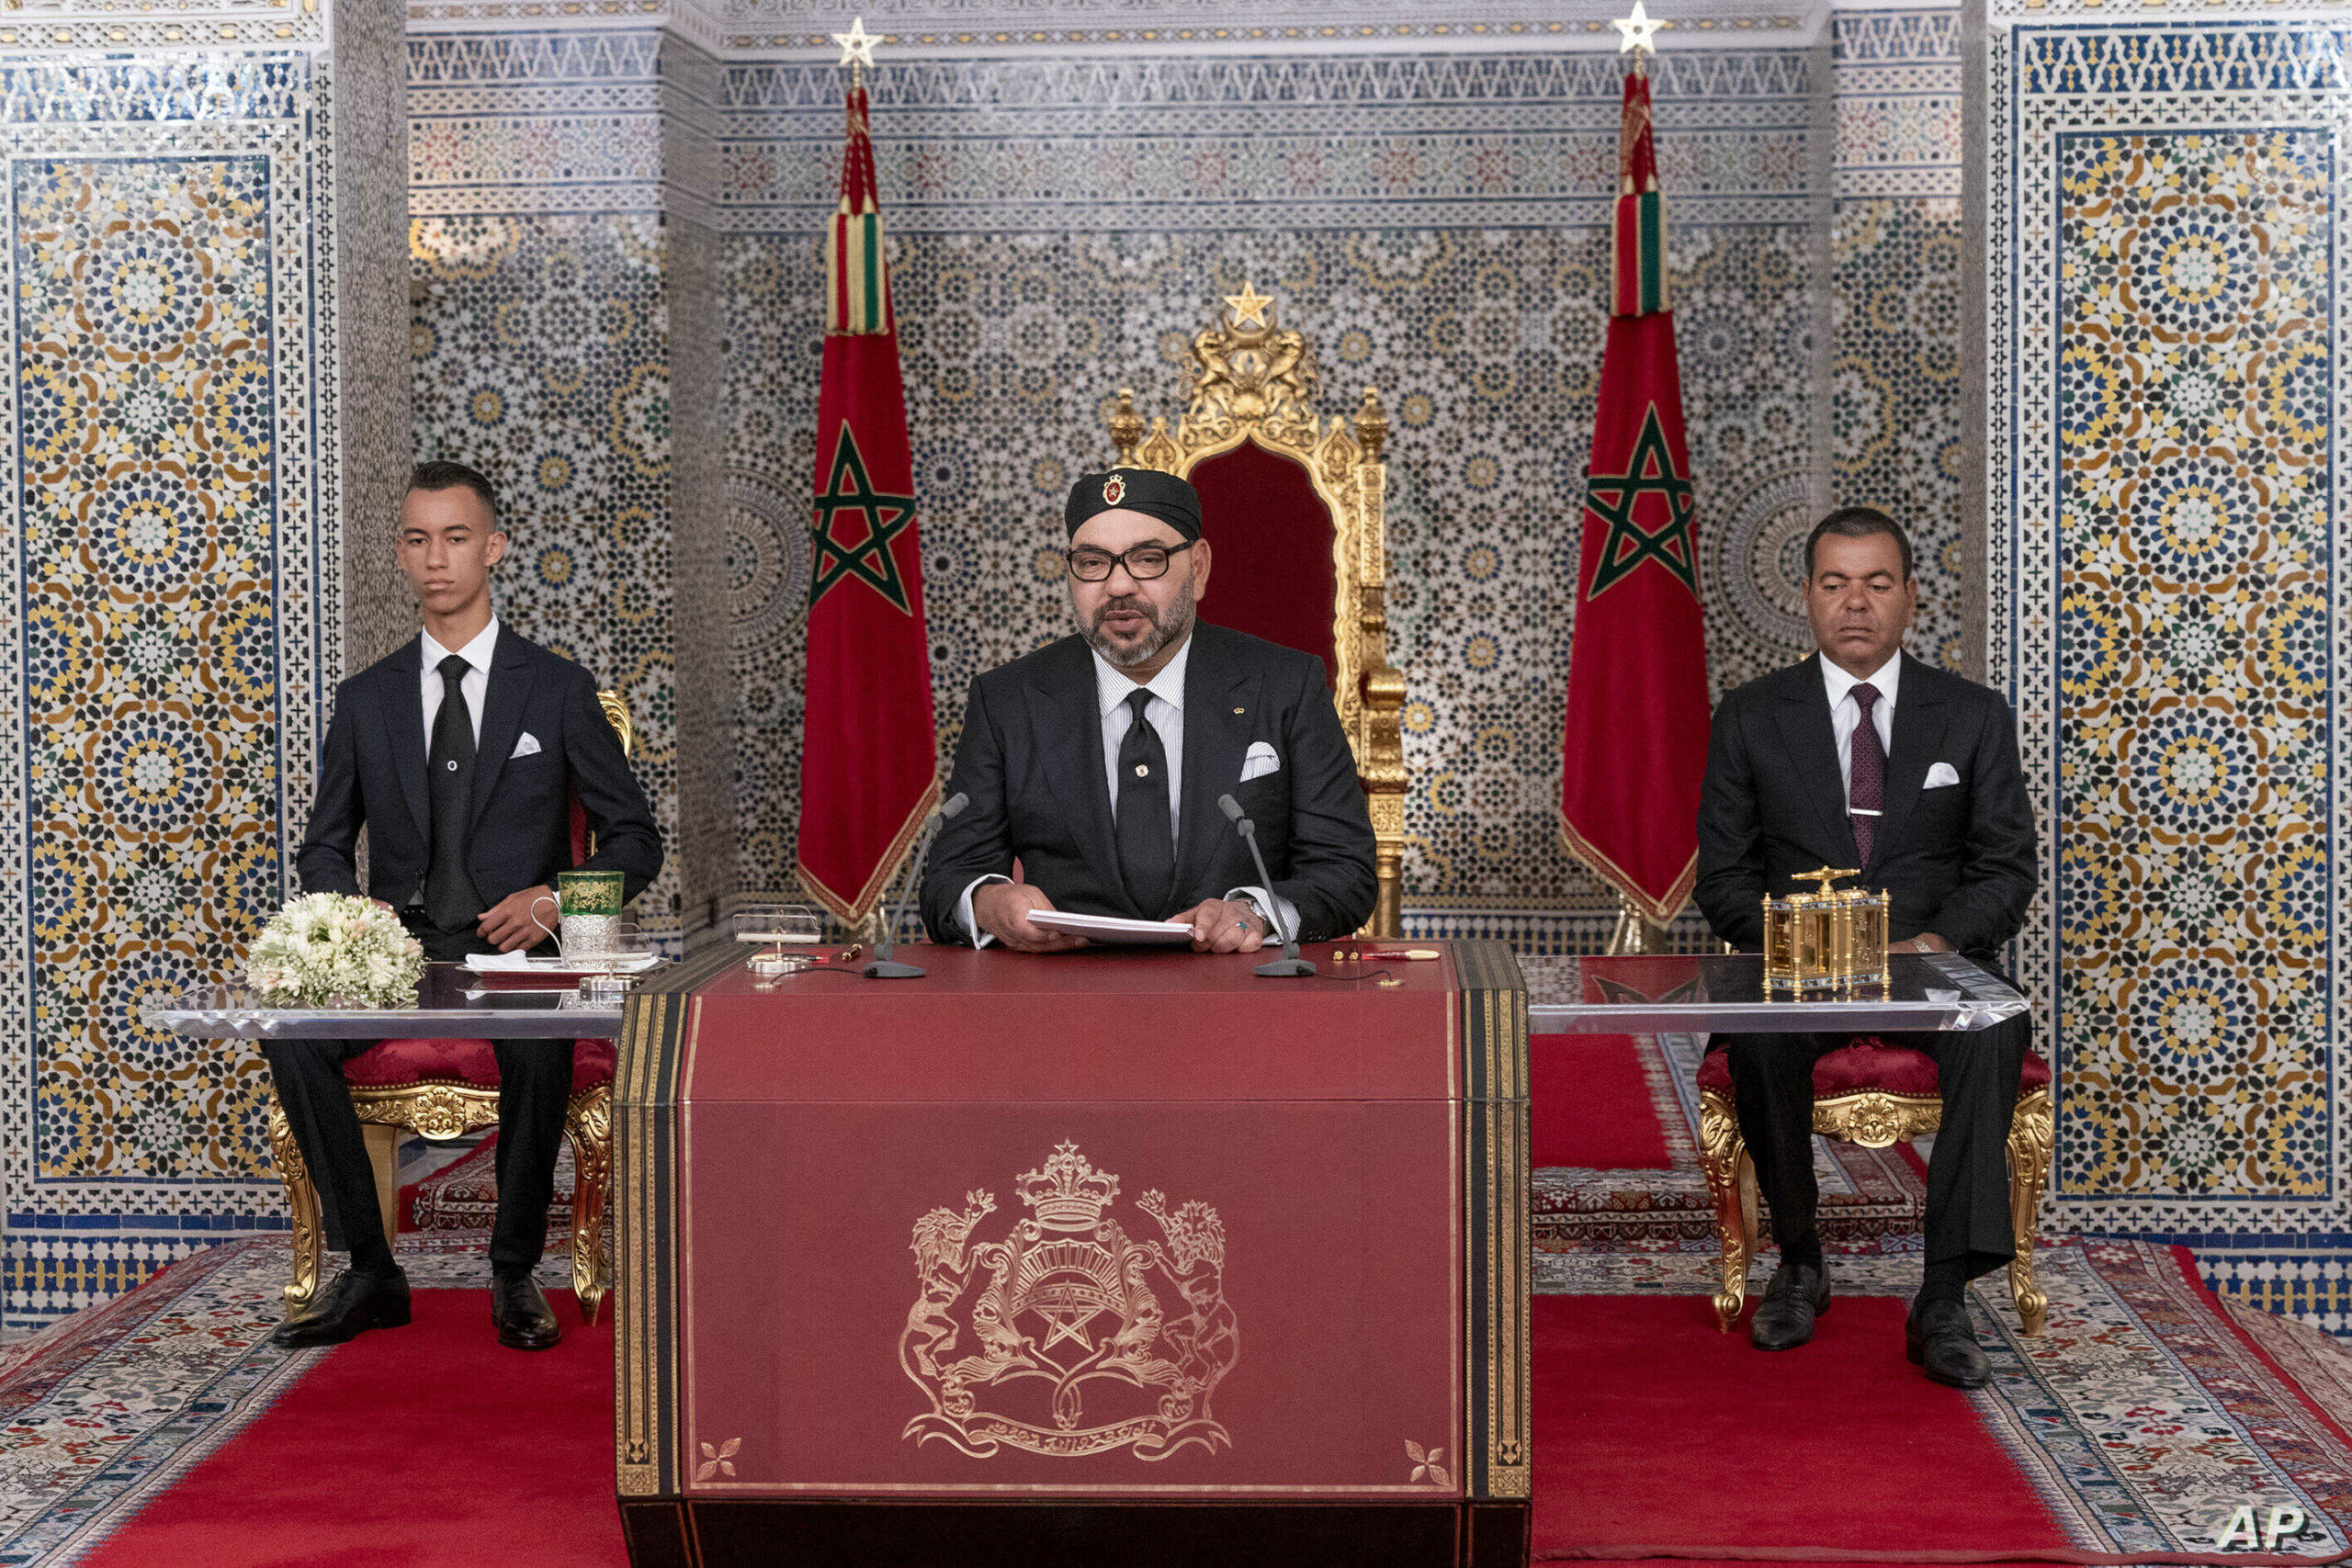 Μαρόκο: Ο βασιλιάς διόρισε πρωθυπουργό τον Αζίζ Αχανούς